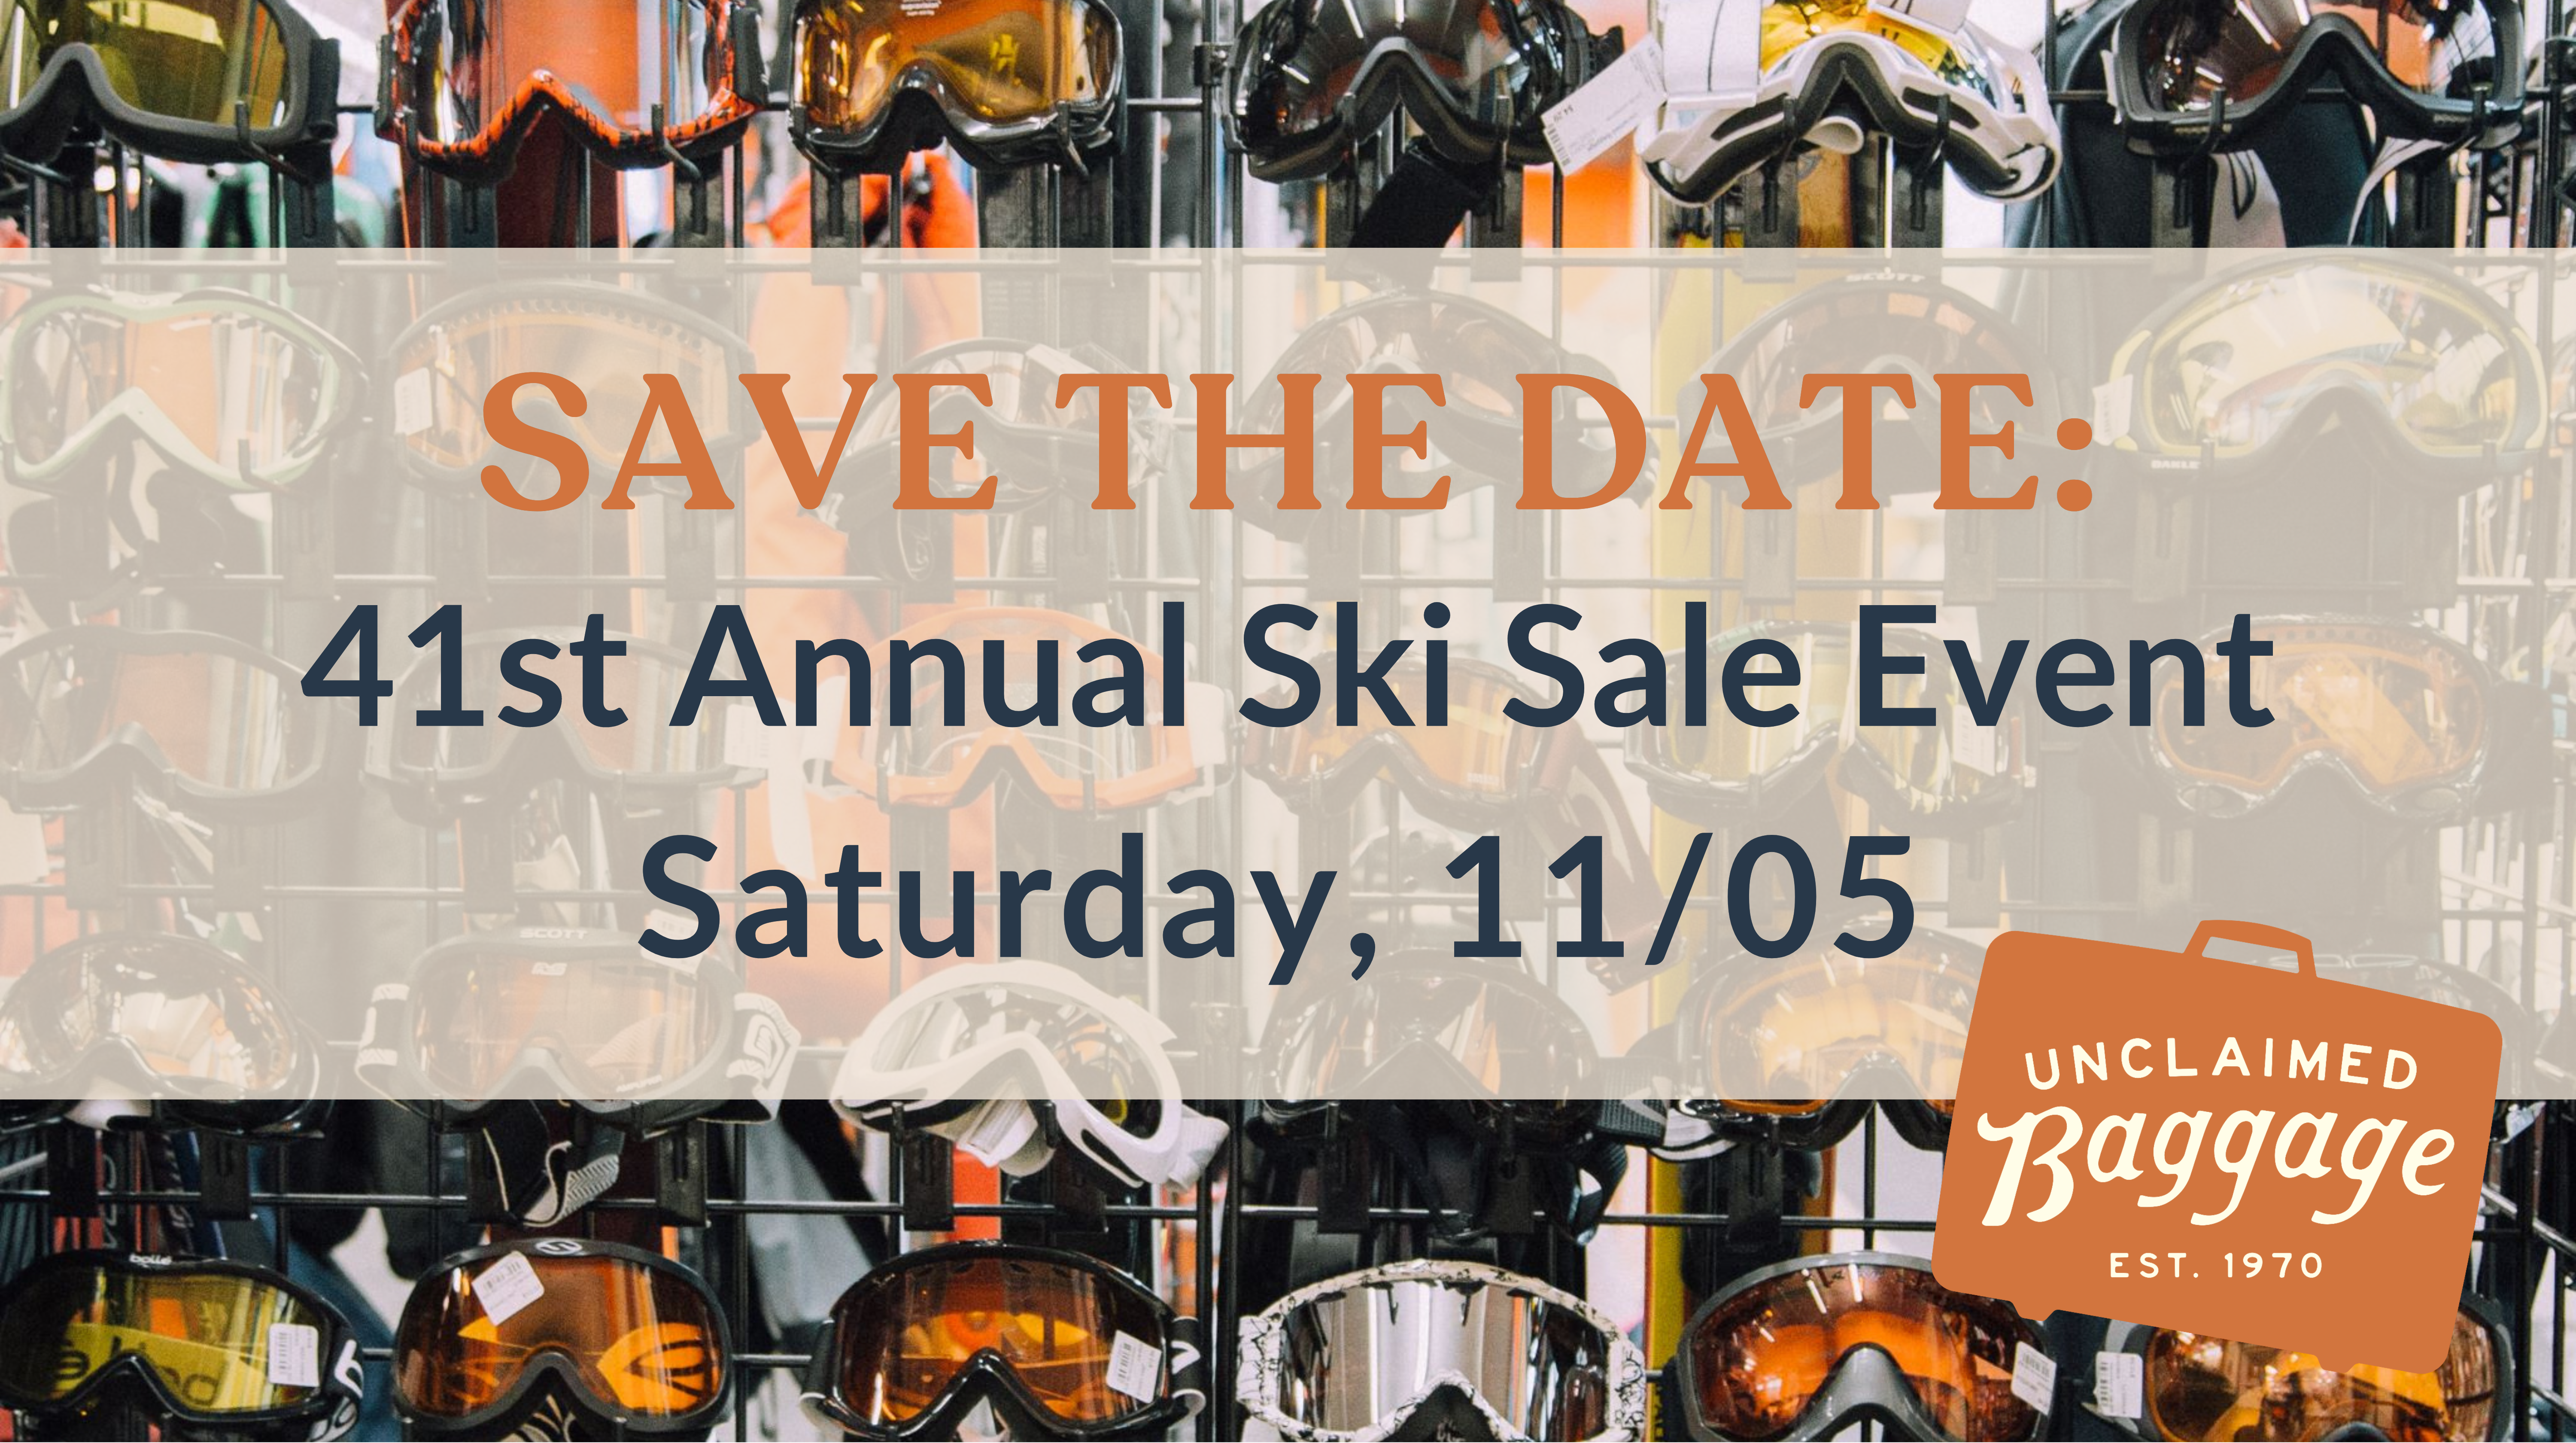 Annual Ski Sale Event